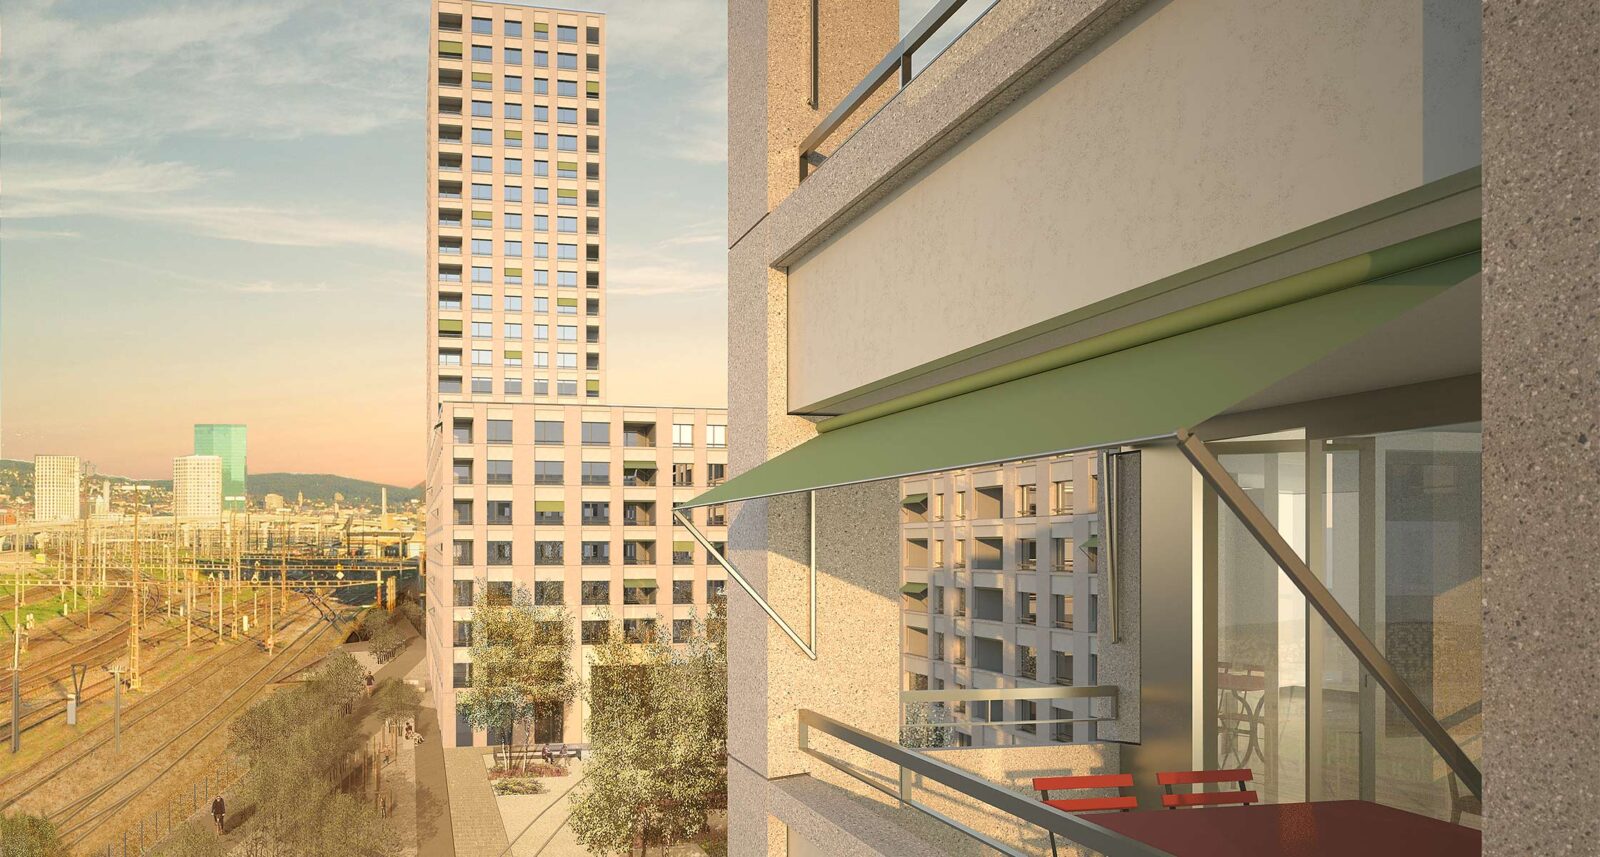 Neubau Siedlung Letzi, Visualisierung: Die Fertigstellung ist für 2025 geplant.